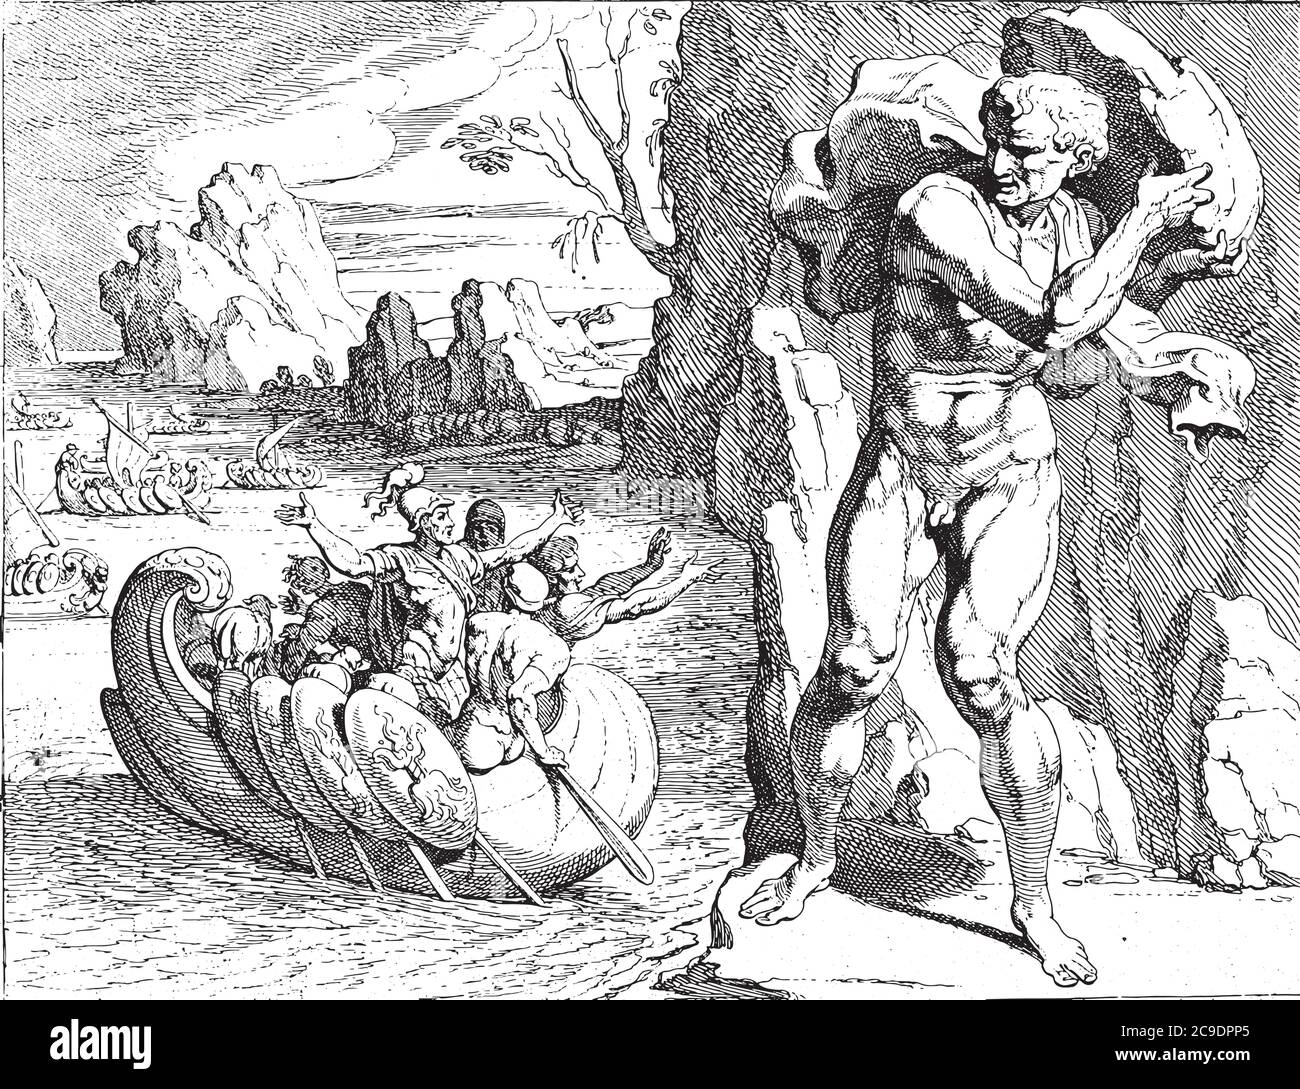 Polyphemus wirft einen Felsen auf das Schiff von Odysseus, der Riese Polyphemus wirft einen Felsen auf das abfahrende Schiff von Odysseus, Vintage Gravur. Stock Vektor